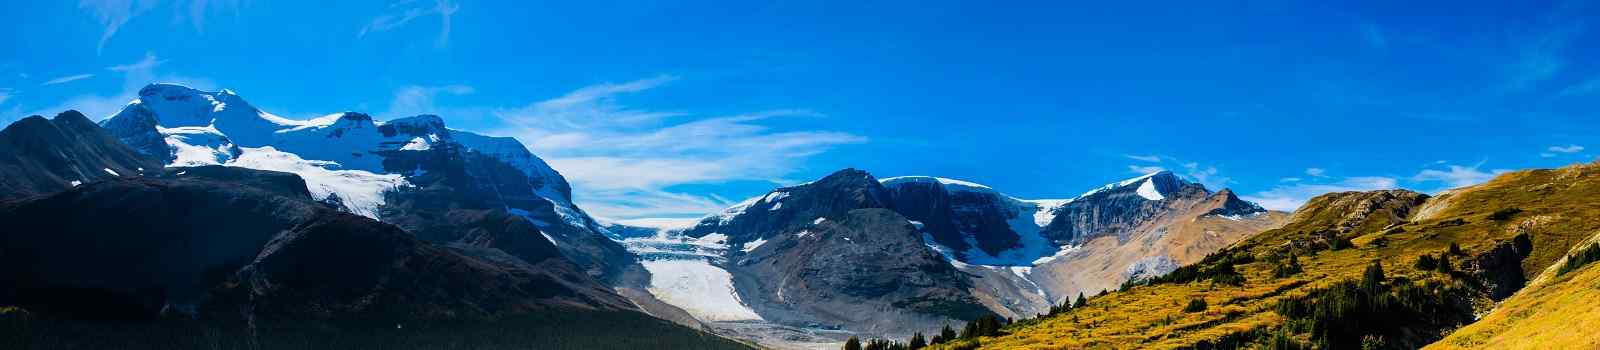 -Kanada Jasper NP Wilcox Pass Panorama 157772042